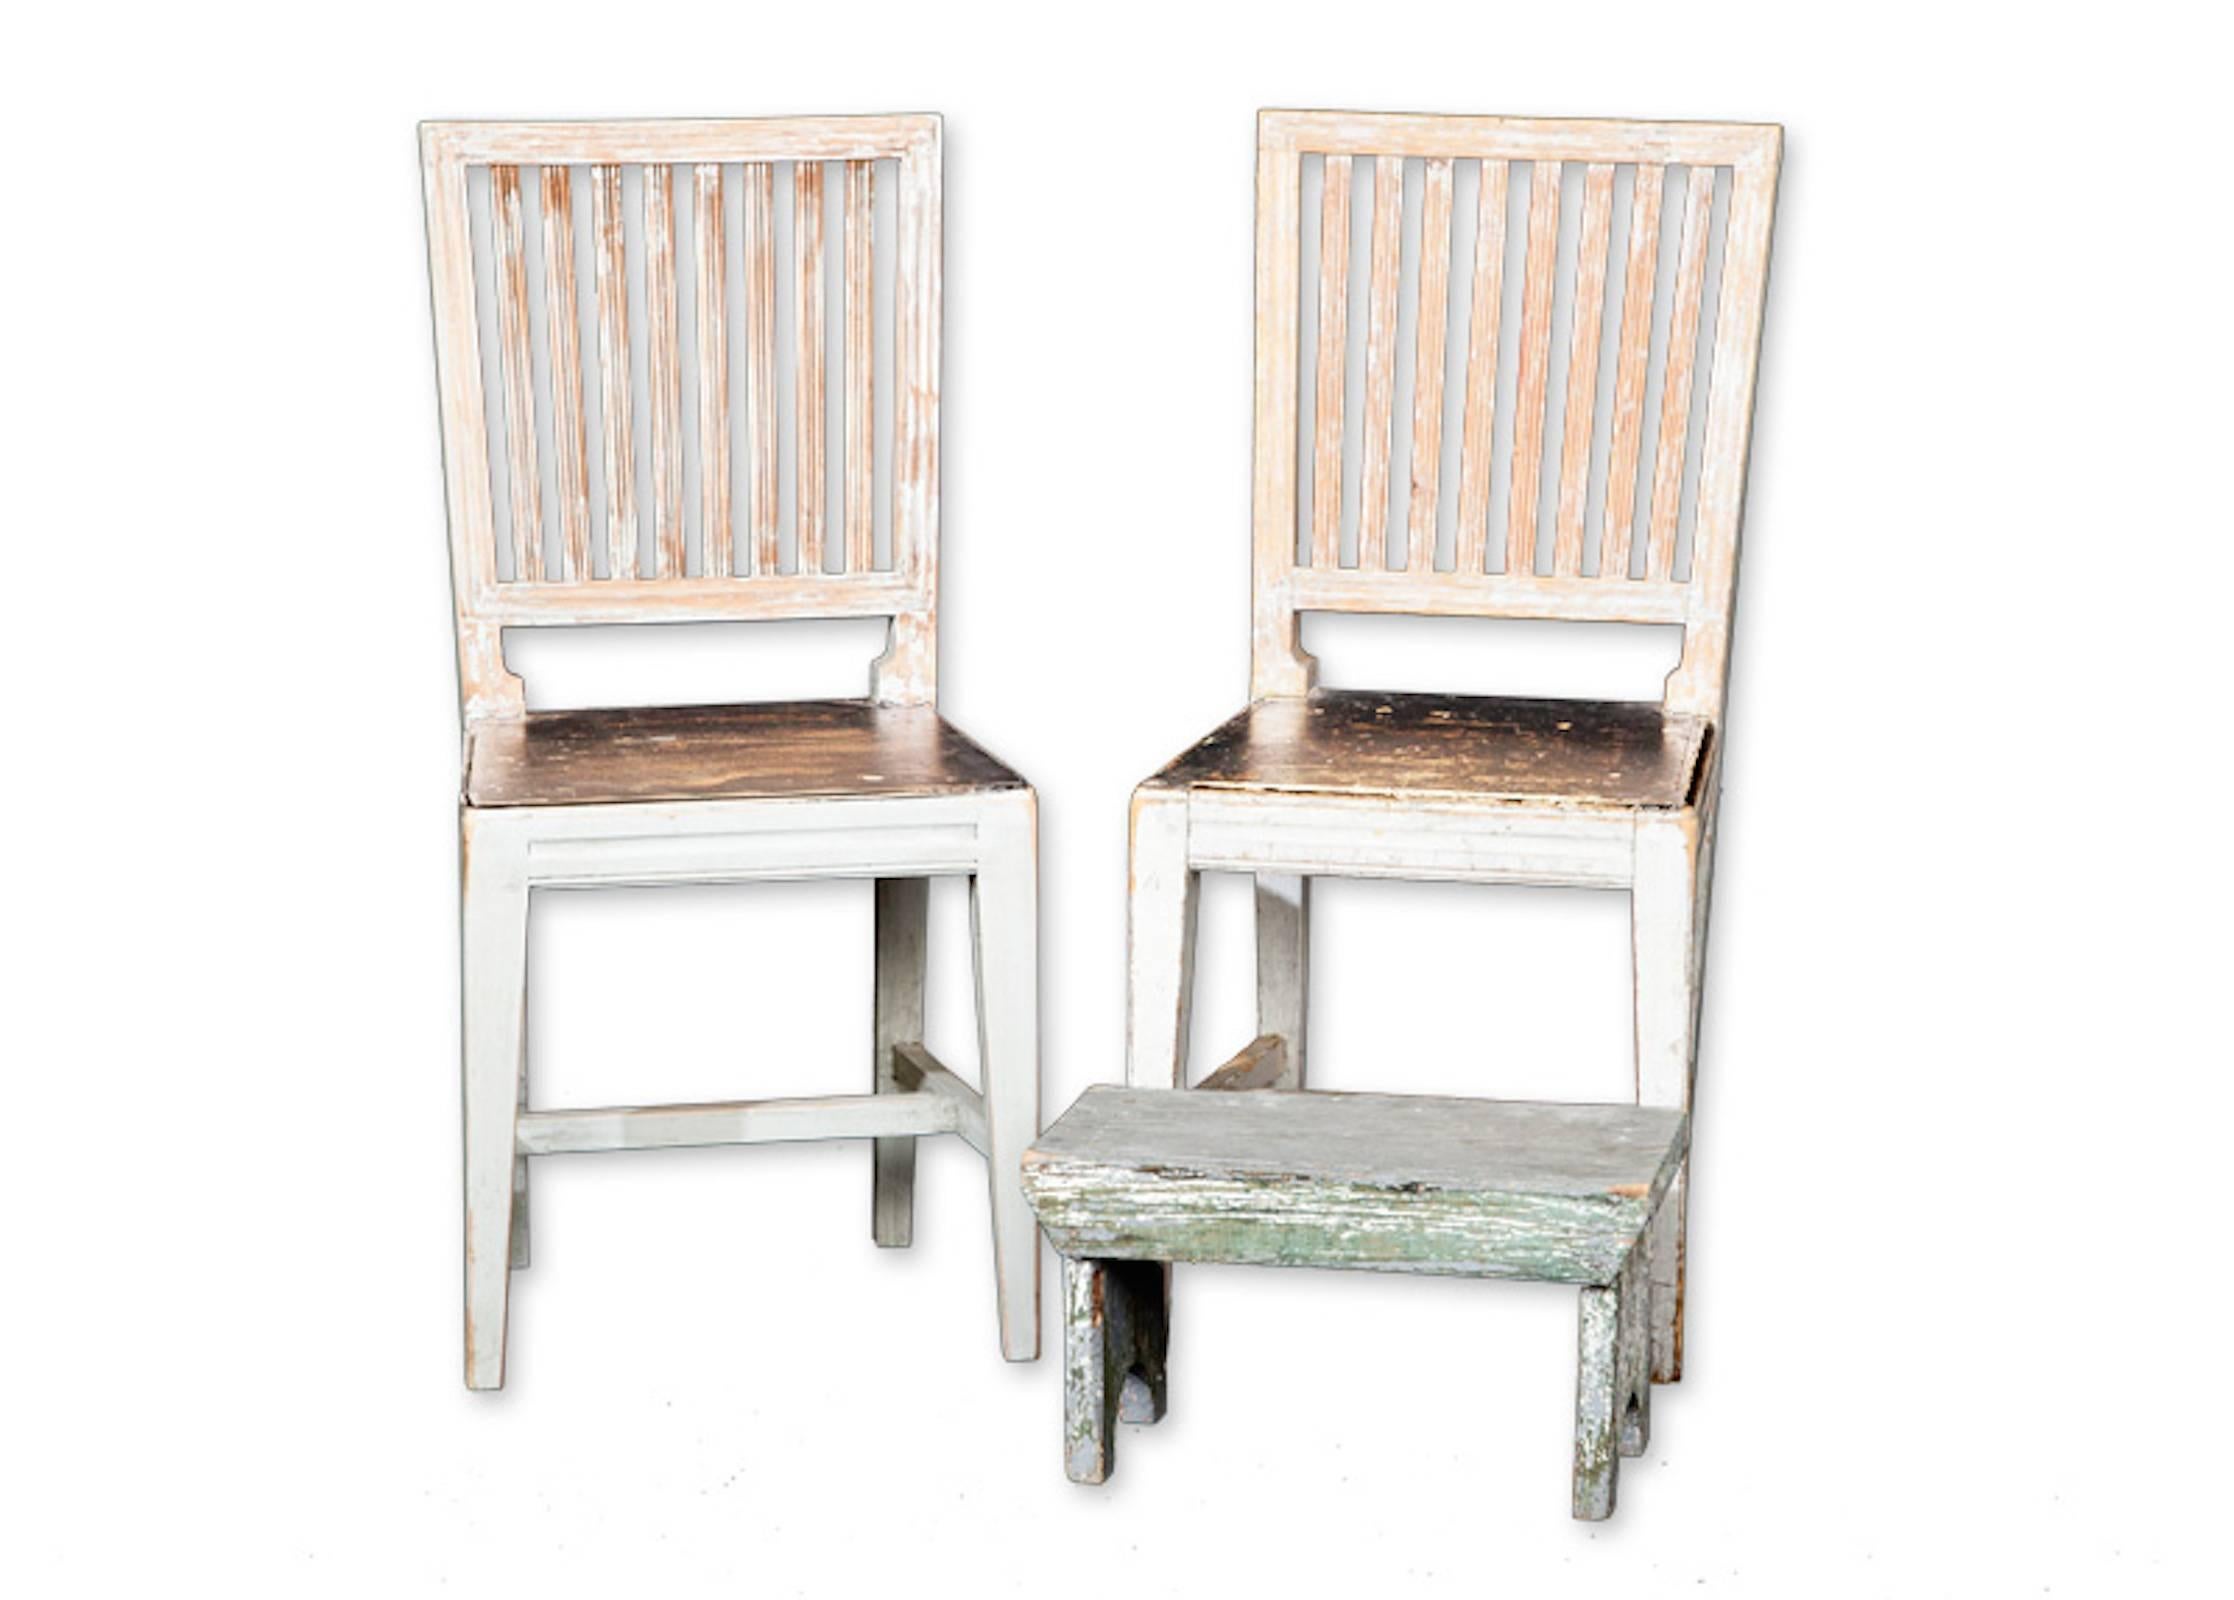 Reproduction de fauteuils et de canapés de style suédois. La couleur de la peinture et les dimensions sont conformes aux spécifications du client.
747 $ par chaise latérale.
847 $ fauteuil chacun.